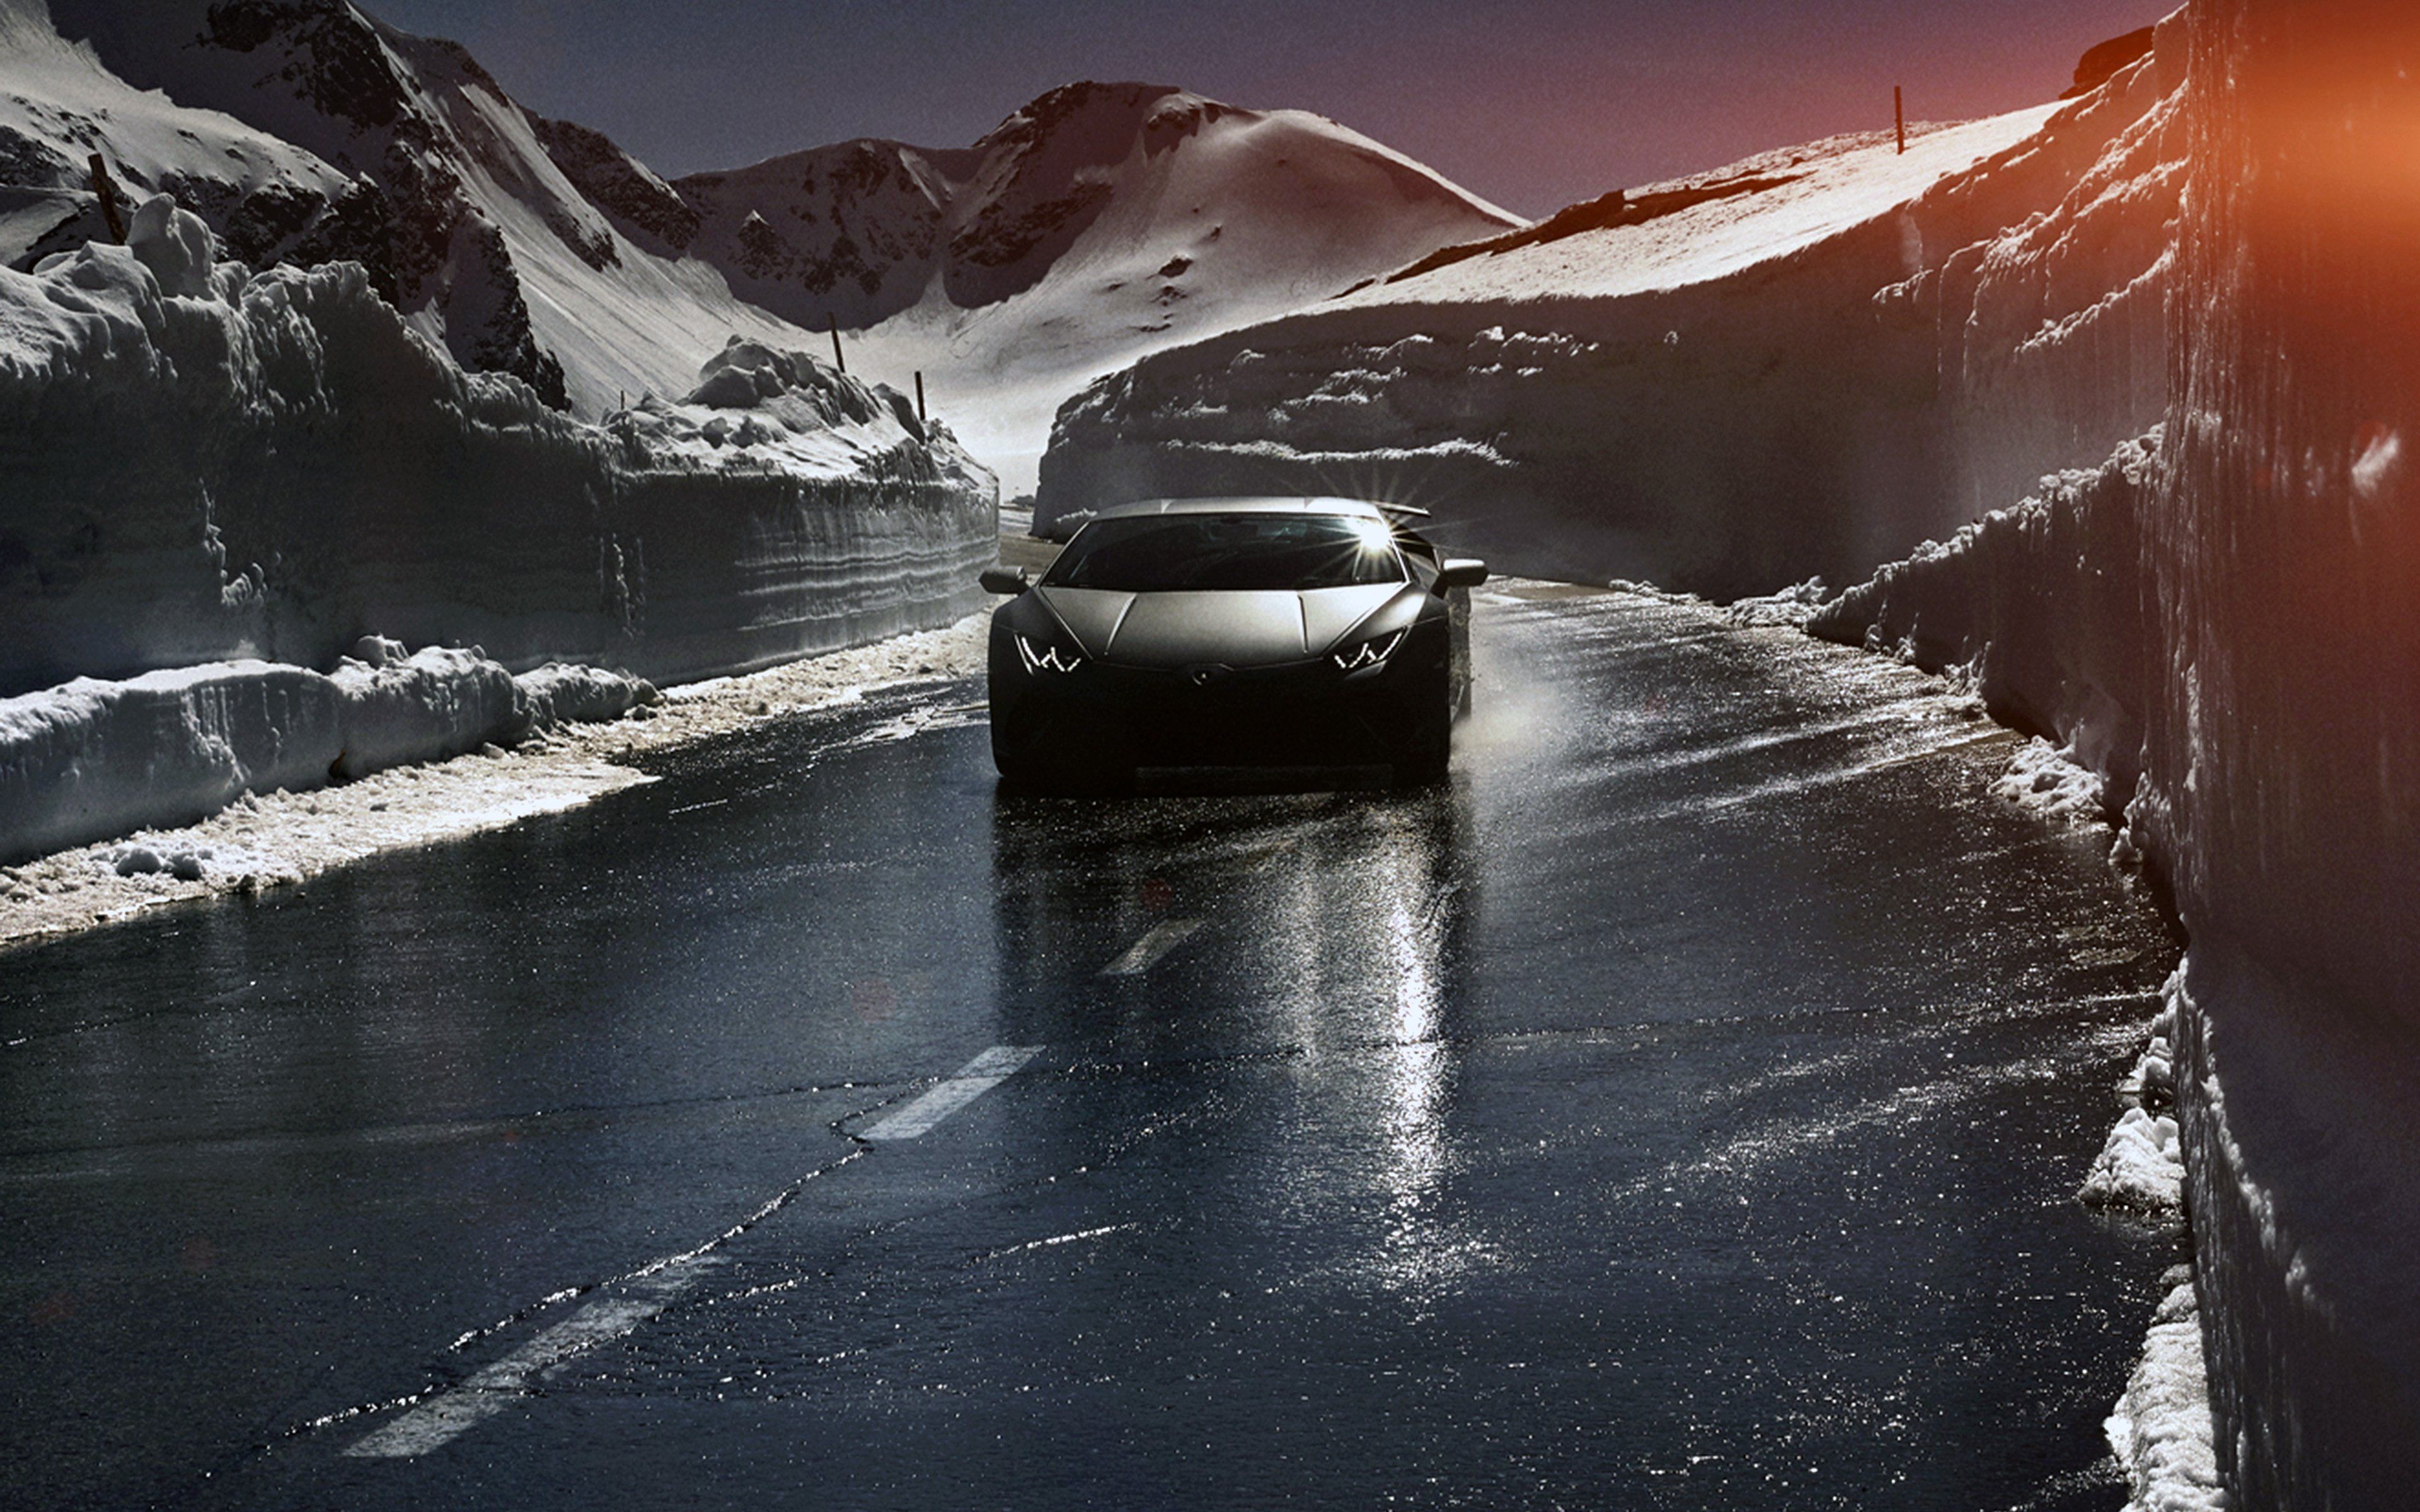 car #lamborghini #car #dark #road #drive #art #winter K #wallpaper #hdwallpaper #desktop. Lamborghini, Winter wallpaper, Wallpaper